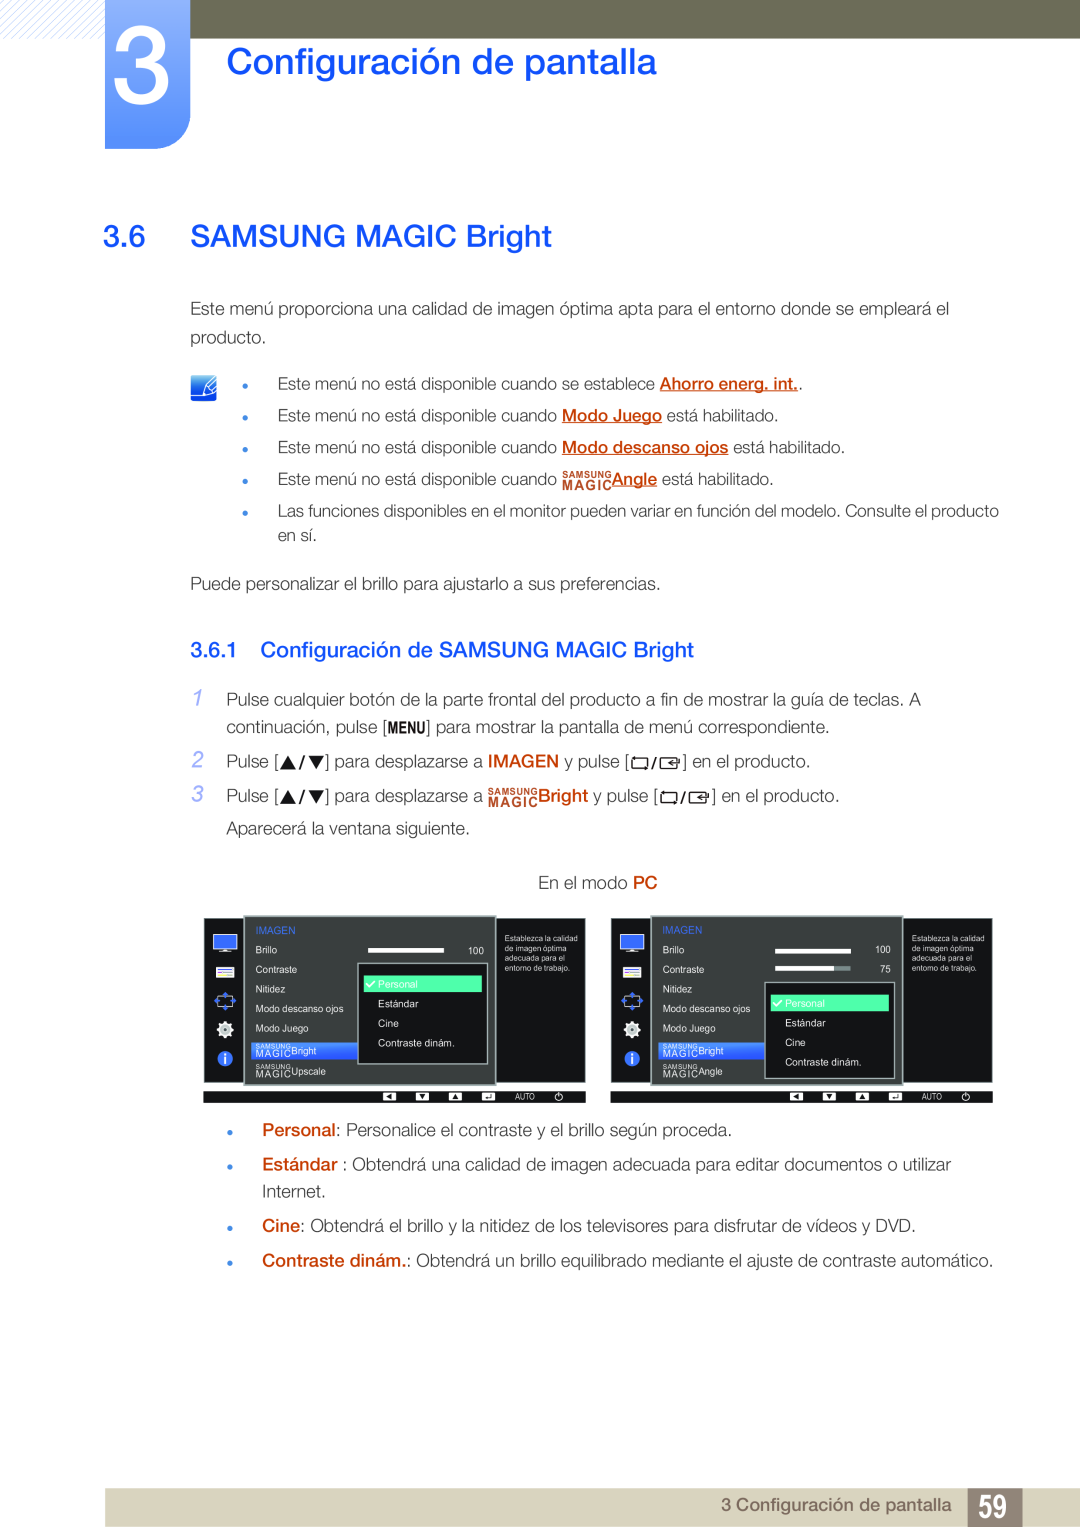 Samsung LS24E65UPLC/EN, LS24E65UPL/EN, LS27E45KBS/EN Configuración de SAMSUNG MAGIC Bright, Configuración de pantalla 